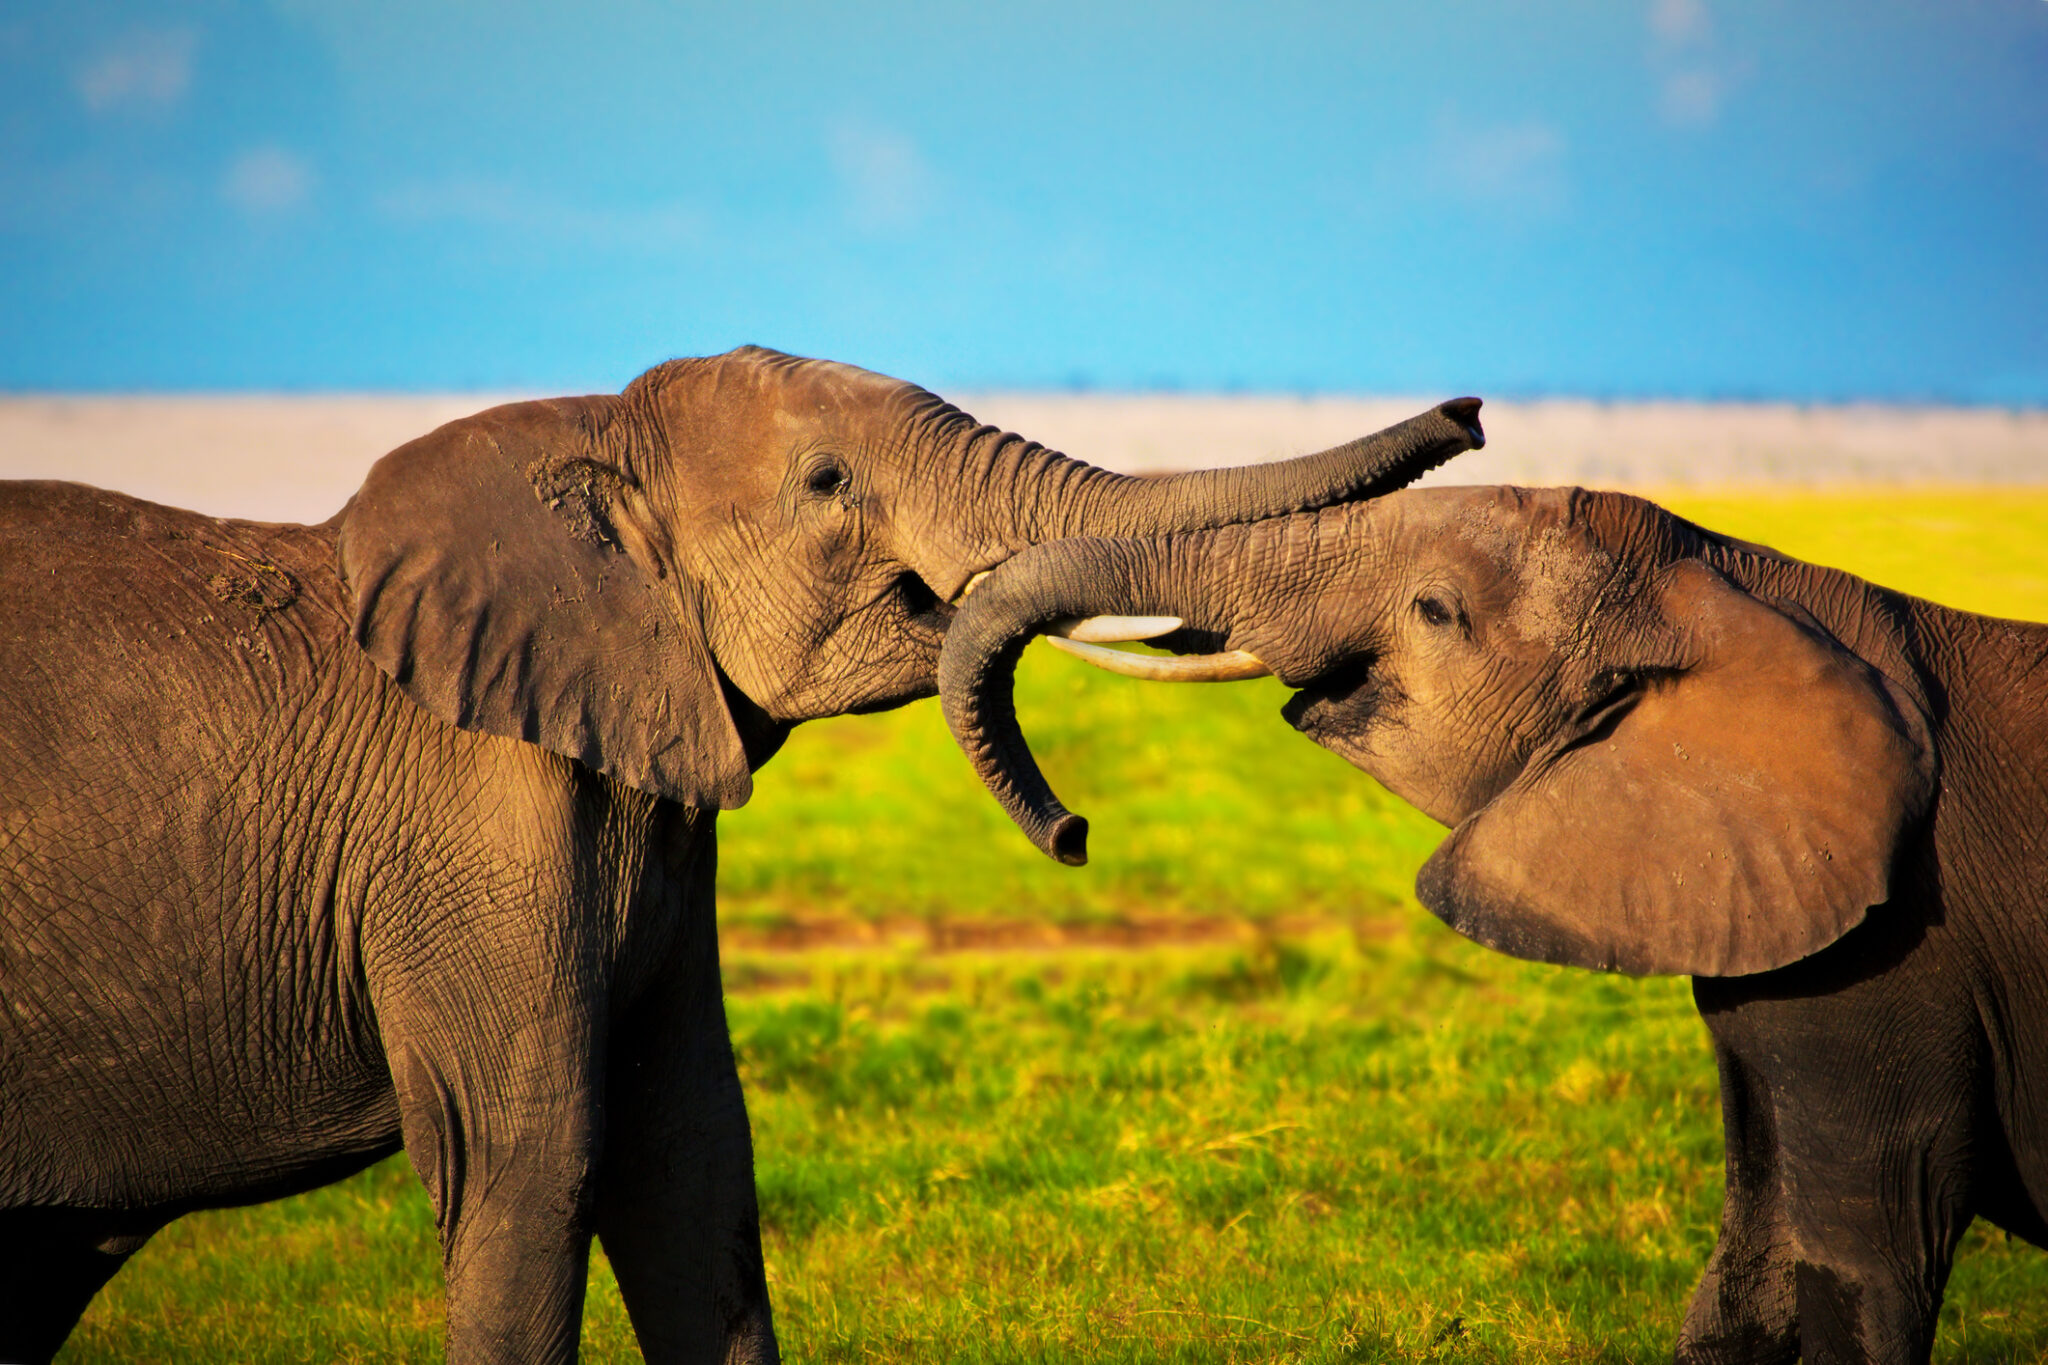 egy új kutatás szerint az elefántok is nevet adnak egymásnak